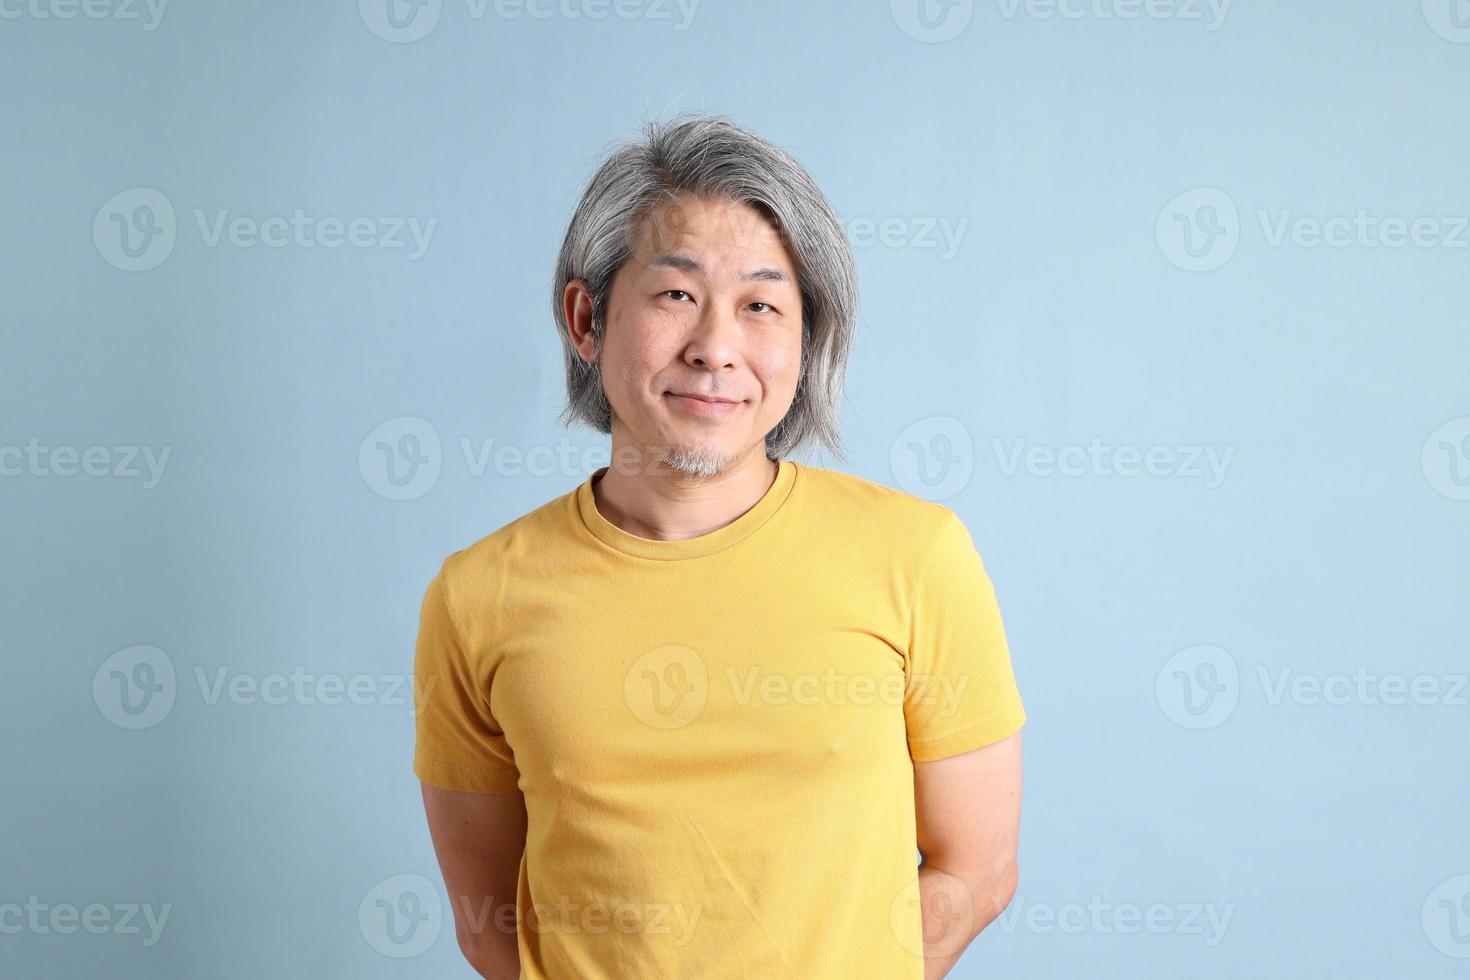 homem asiático com camiseta amarela foto